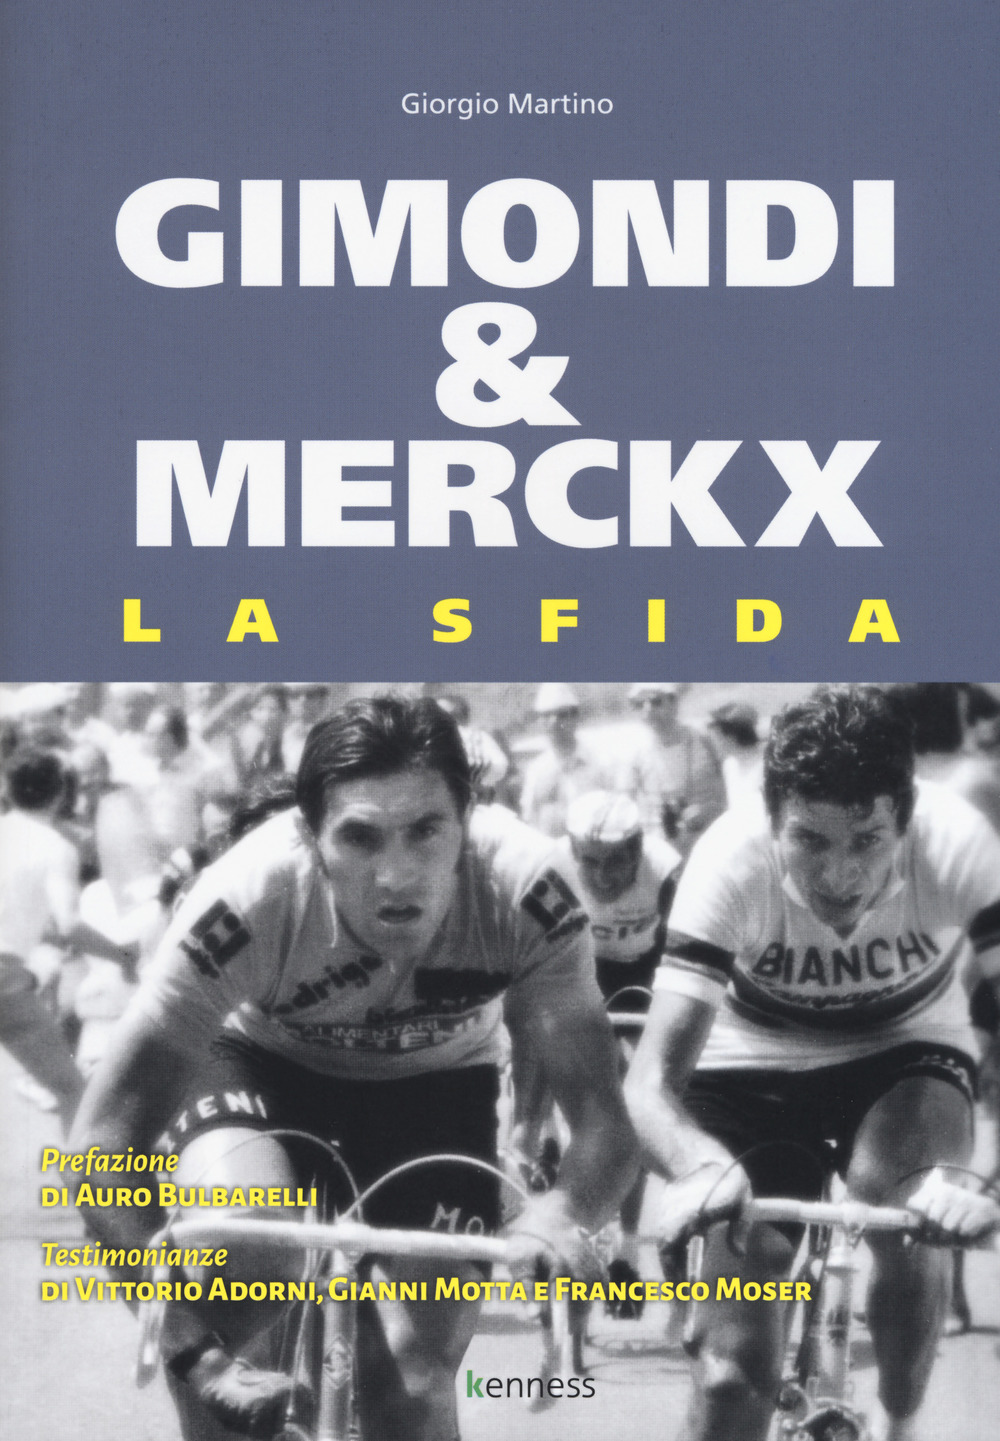 Gimondi & Merckx. La sfida